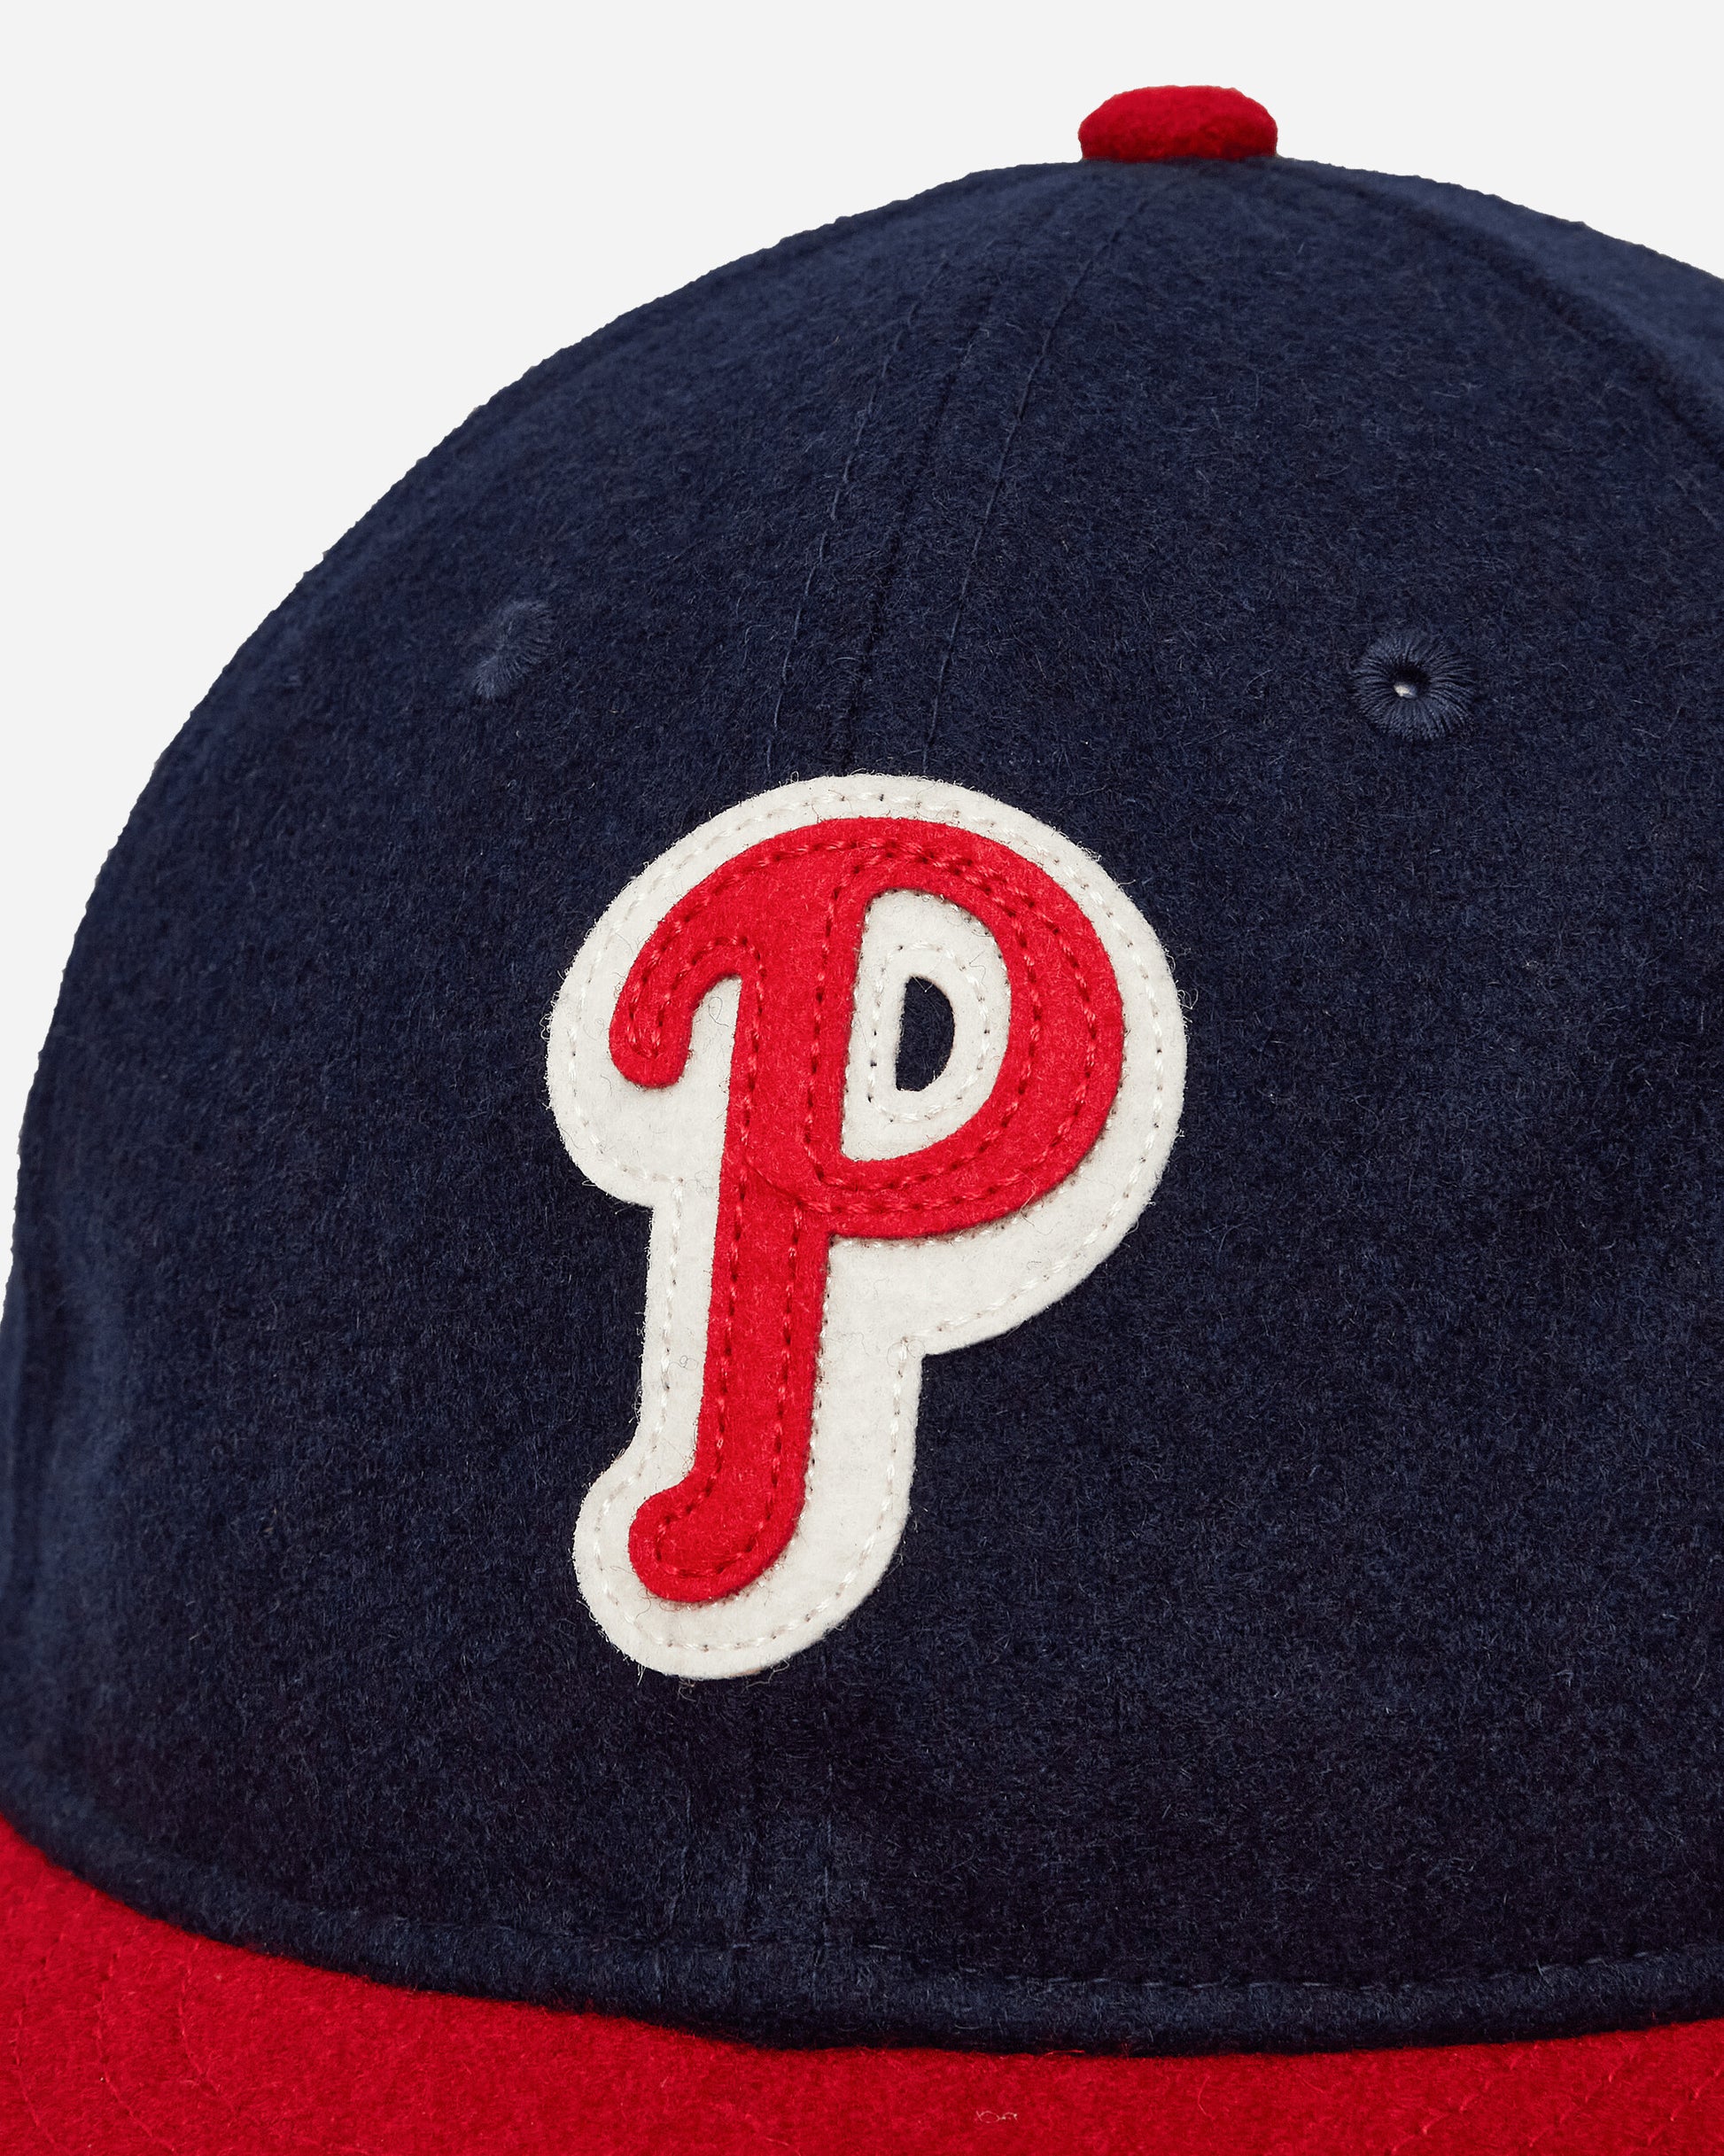 New Era Philadelphia Phillies Otc Hats Caps 60435226 OTC